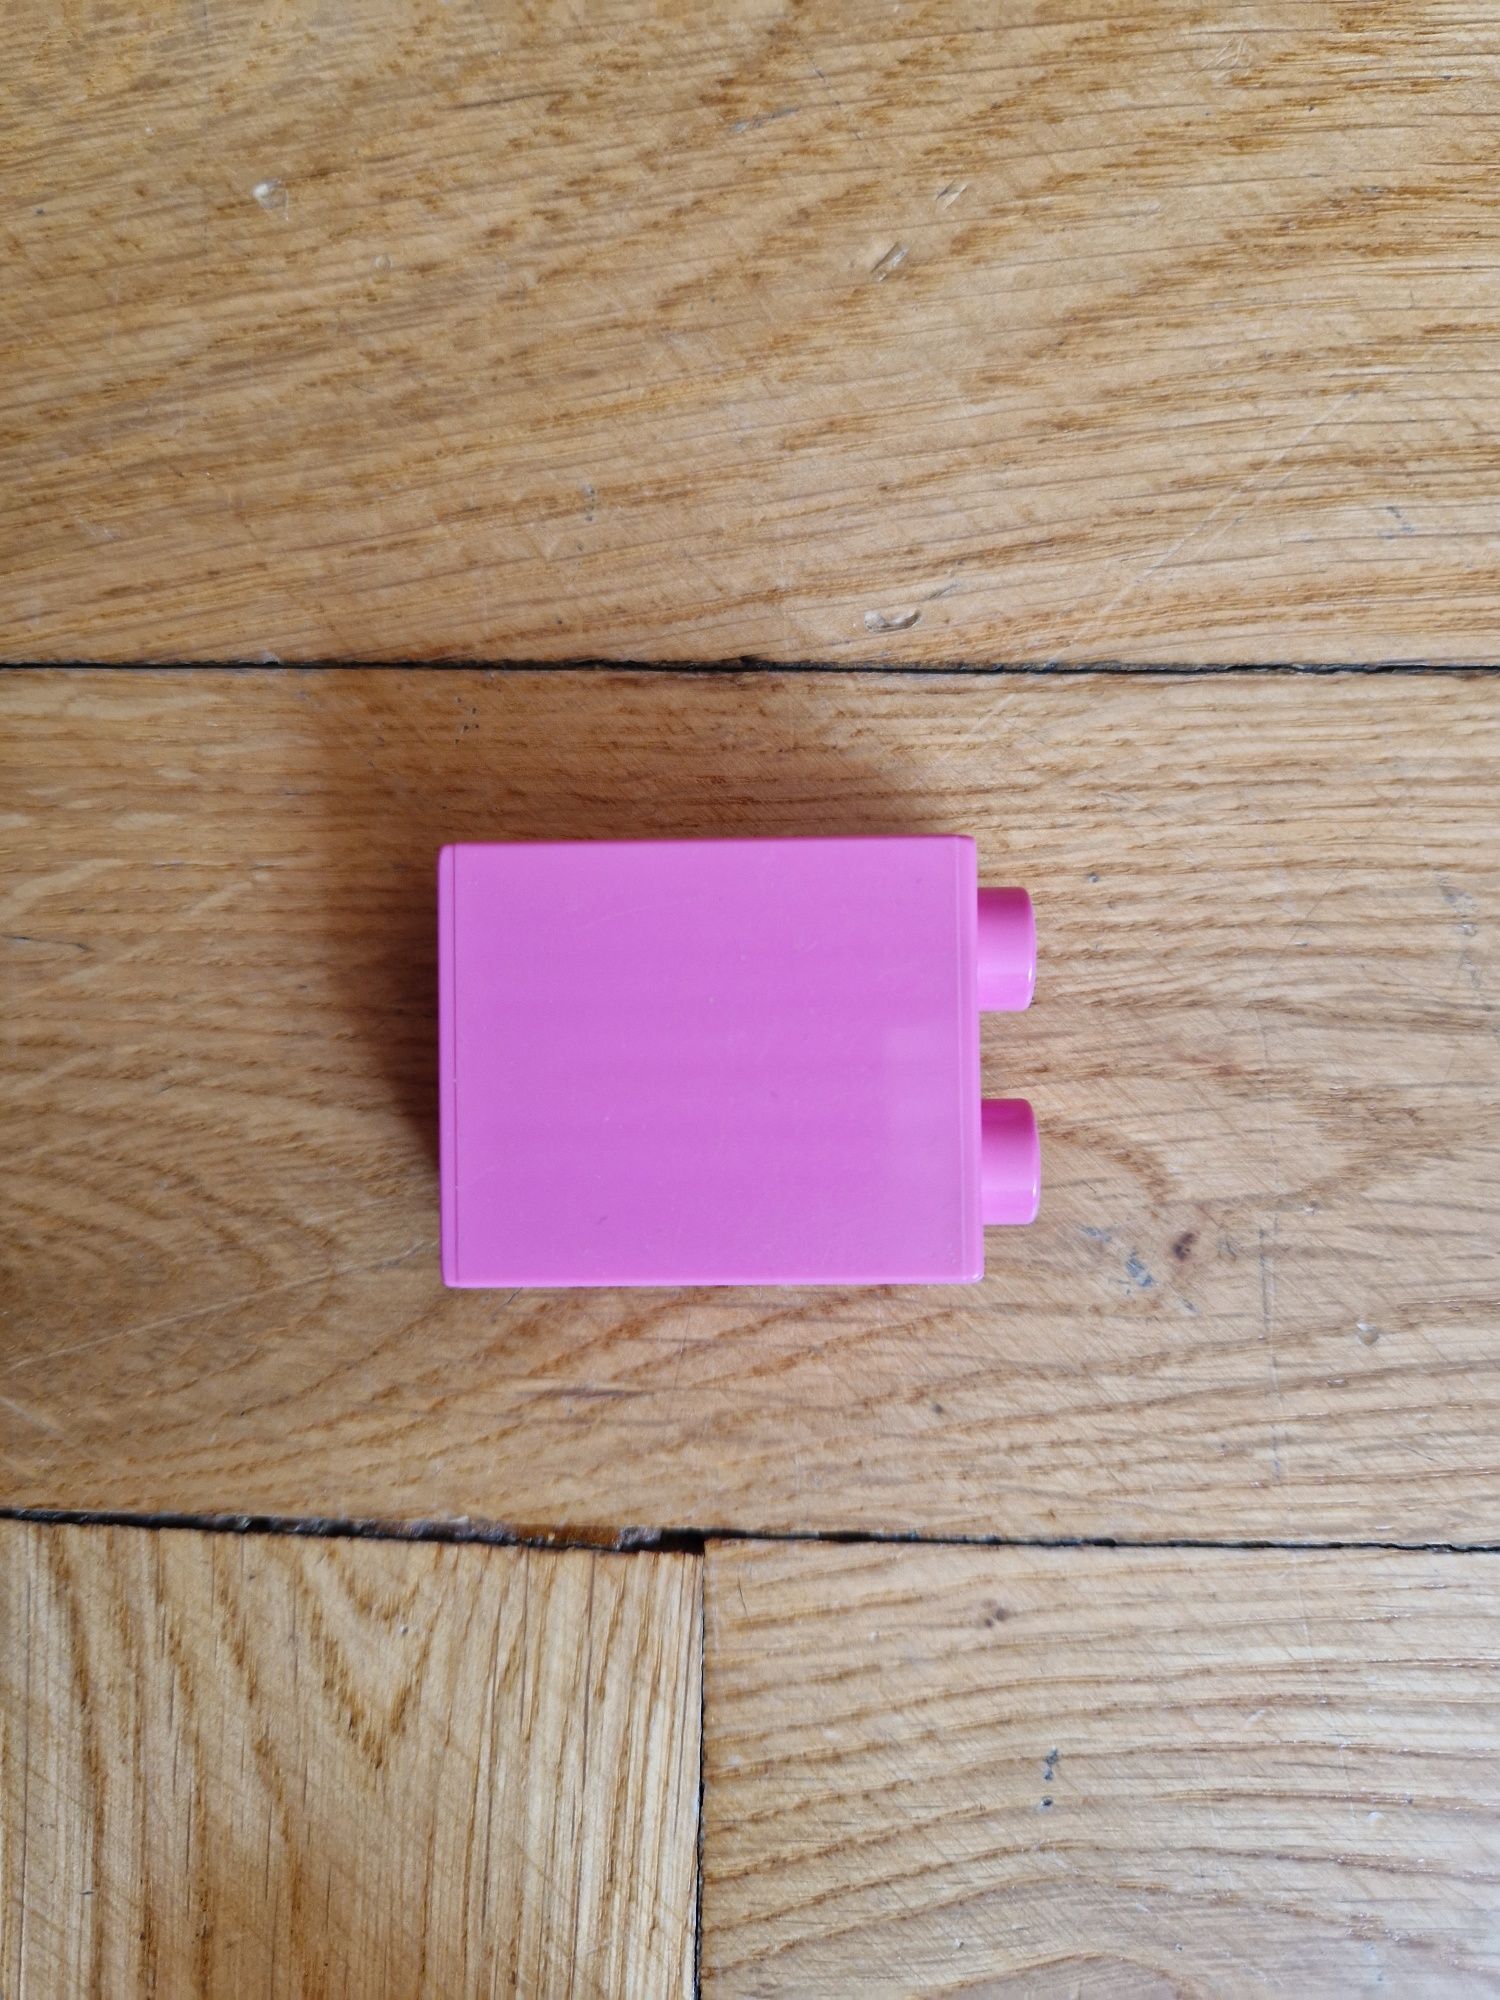 Lego DUPLO 10571 - zestaw z różowymi klockami